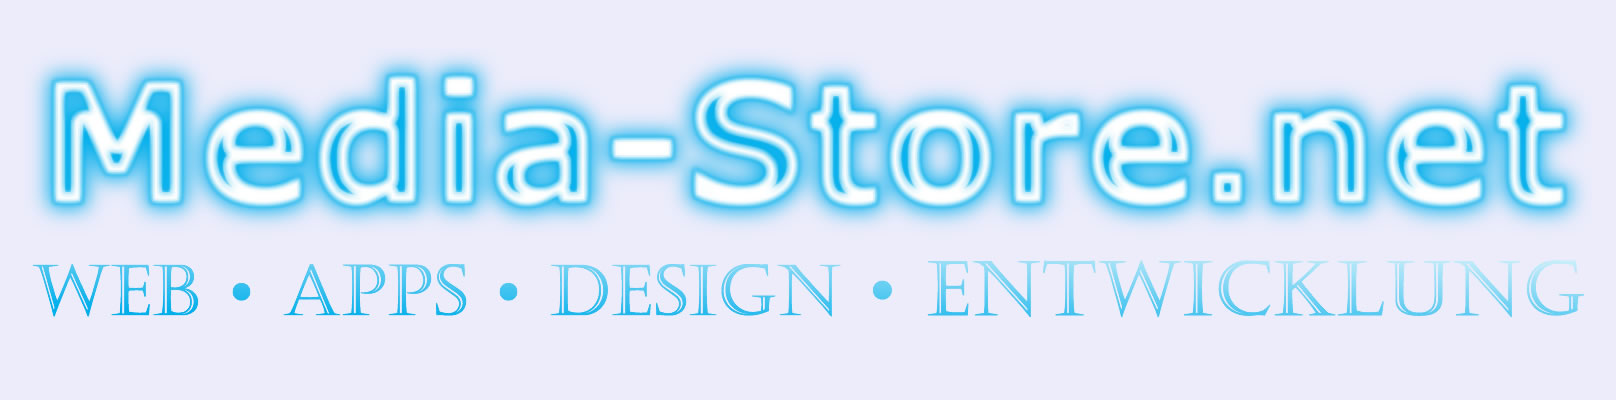 Logo Media-Store.net